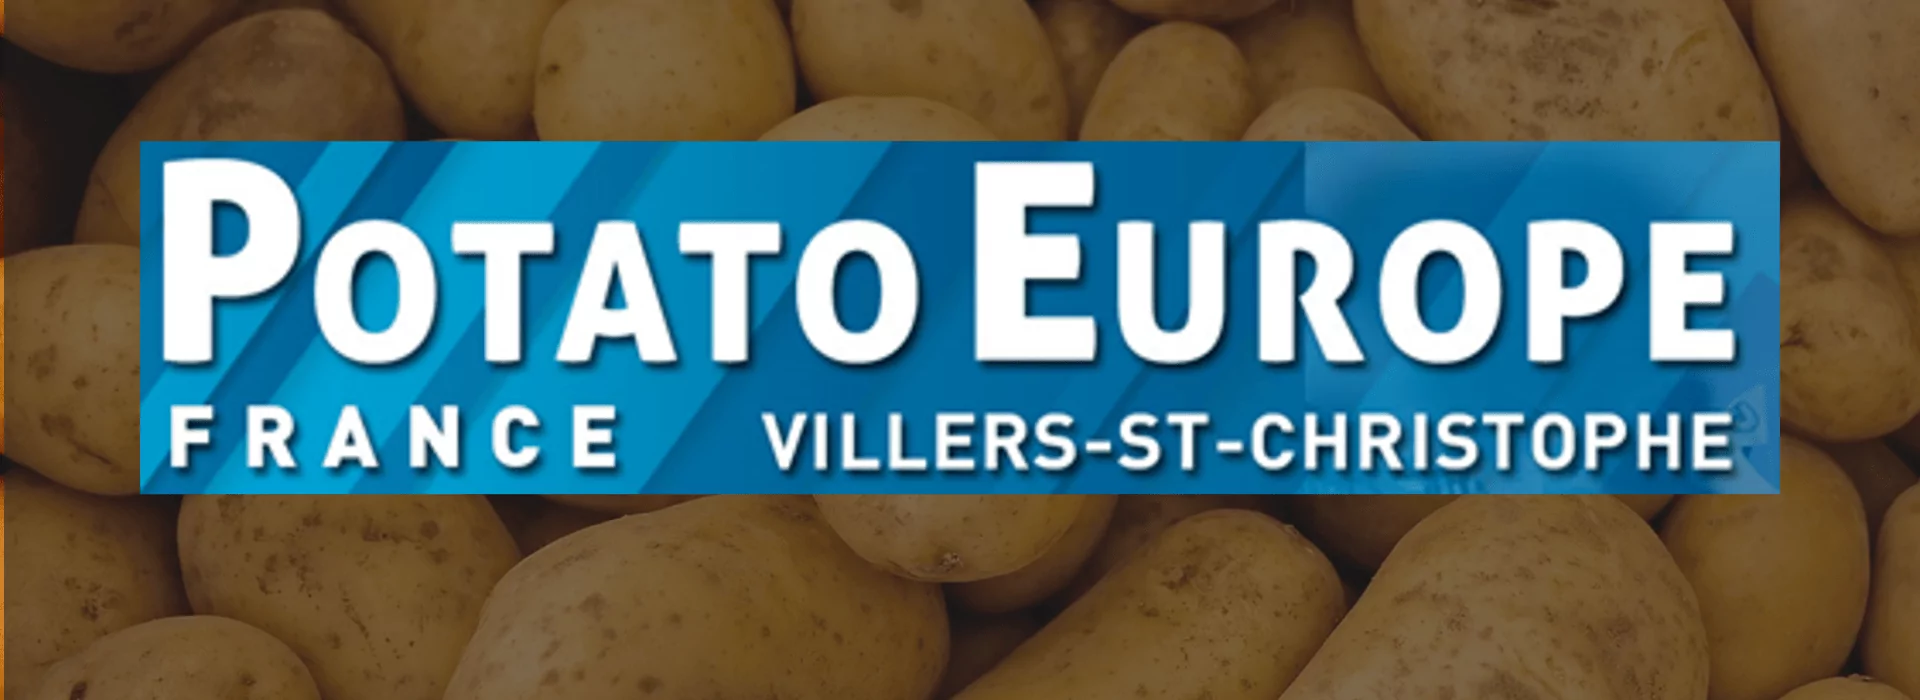 Potato Europe | Tong Engineering